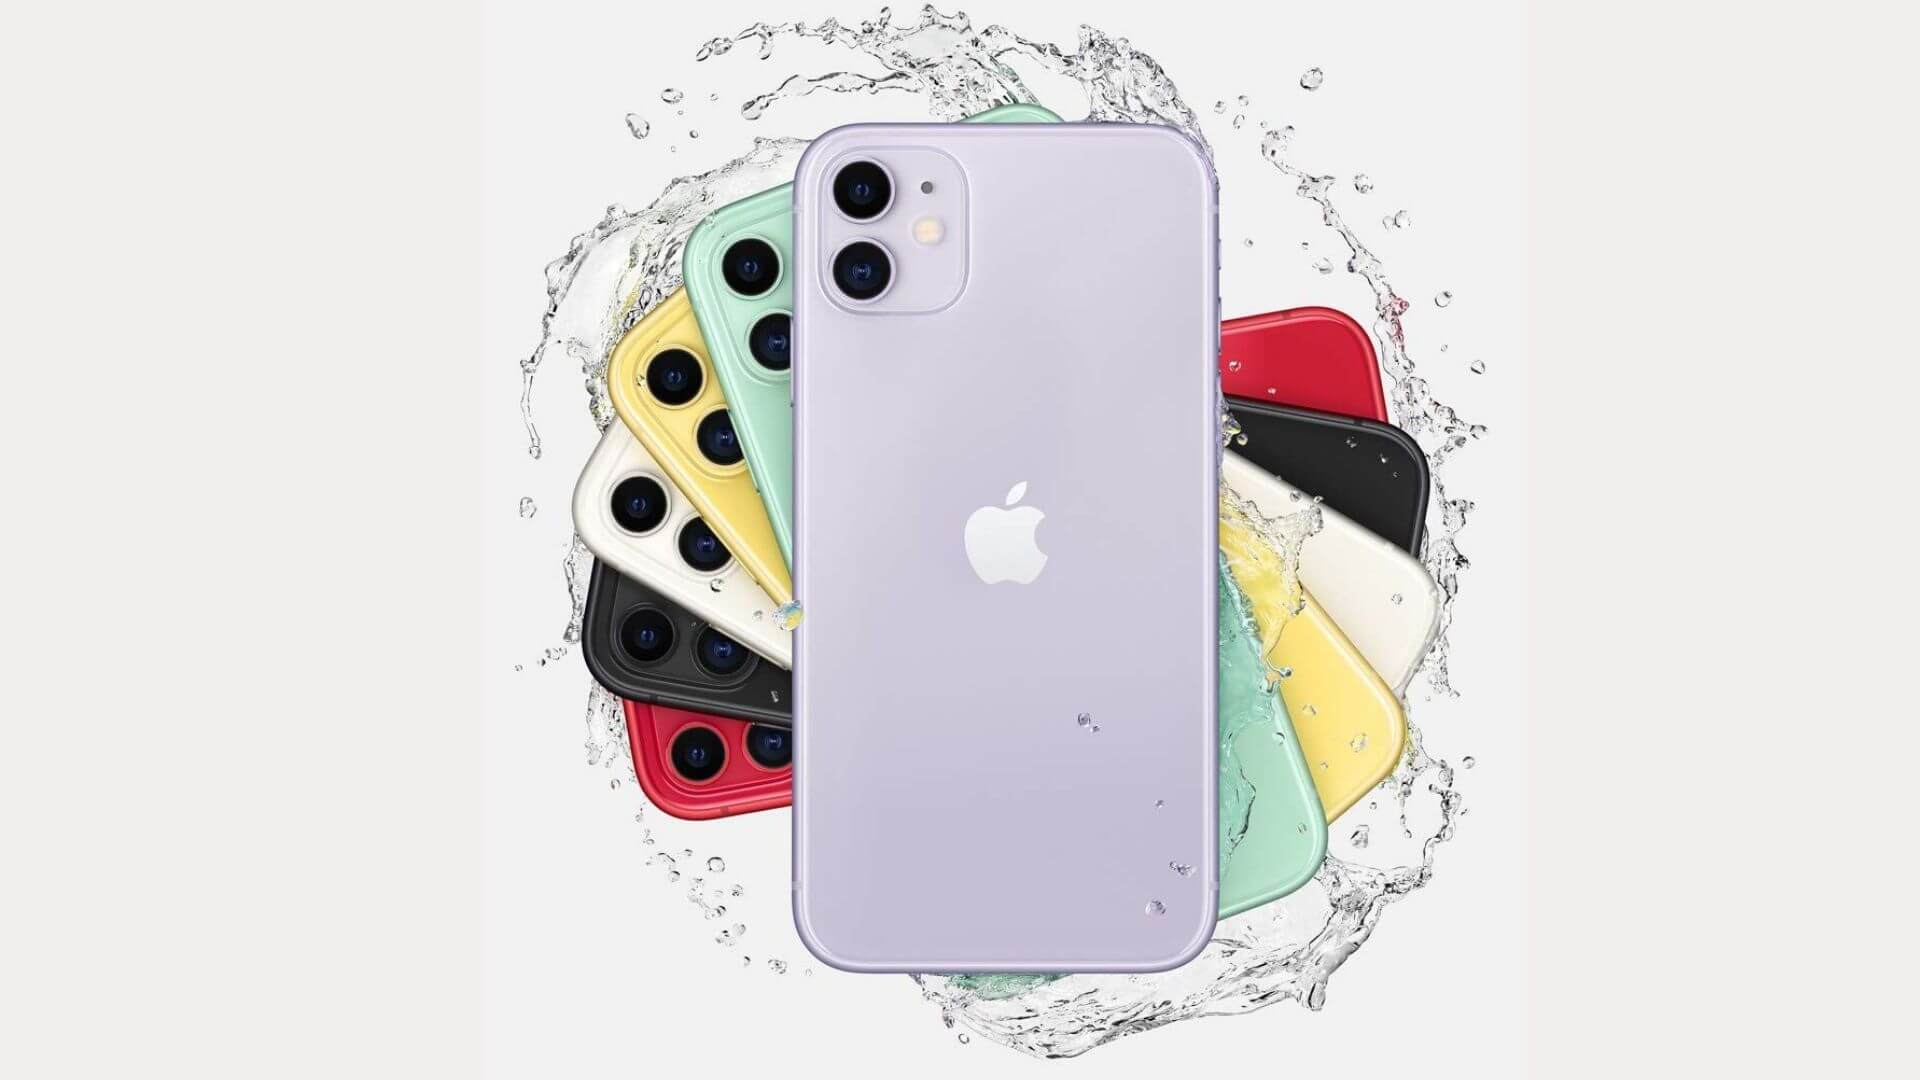 Diseño y colores del iPhone 11